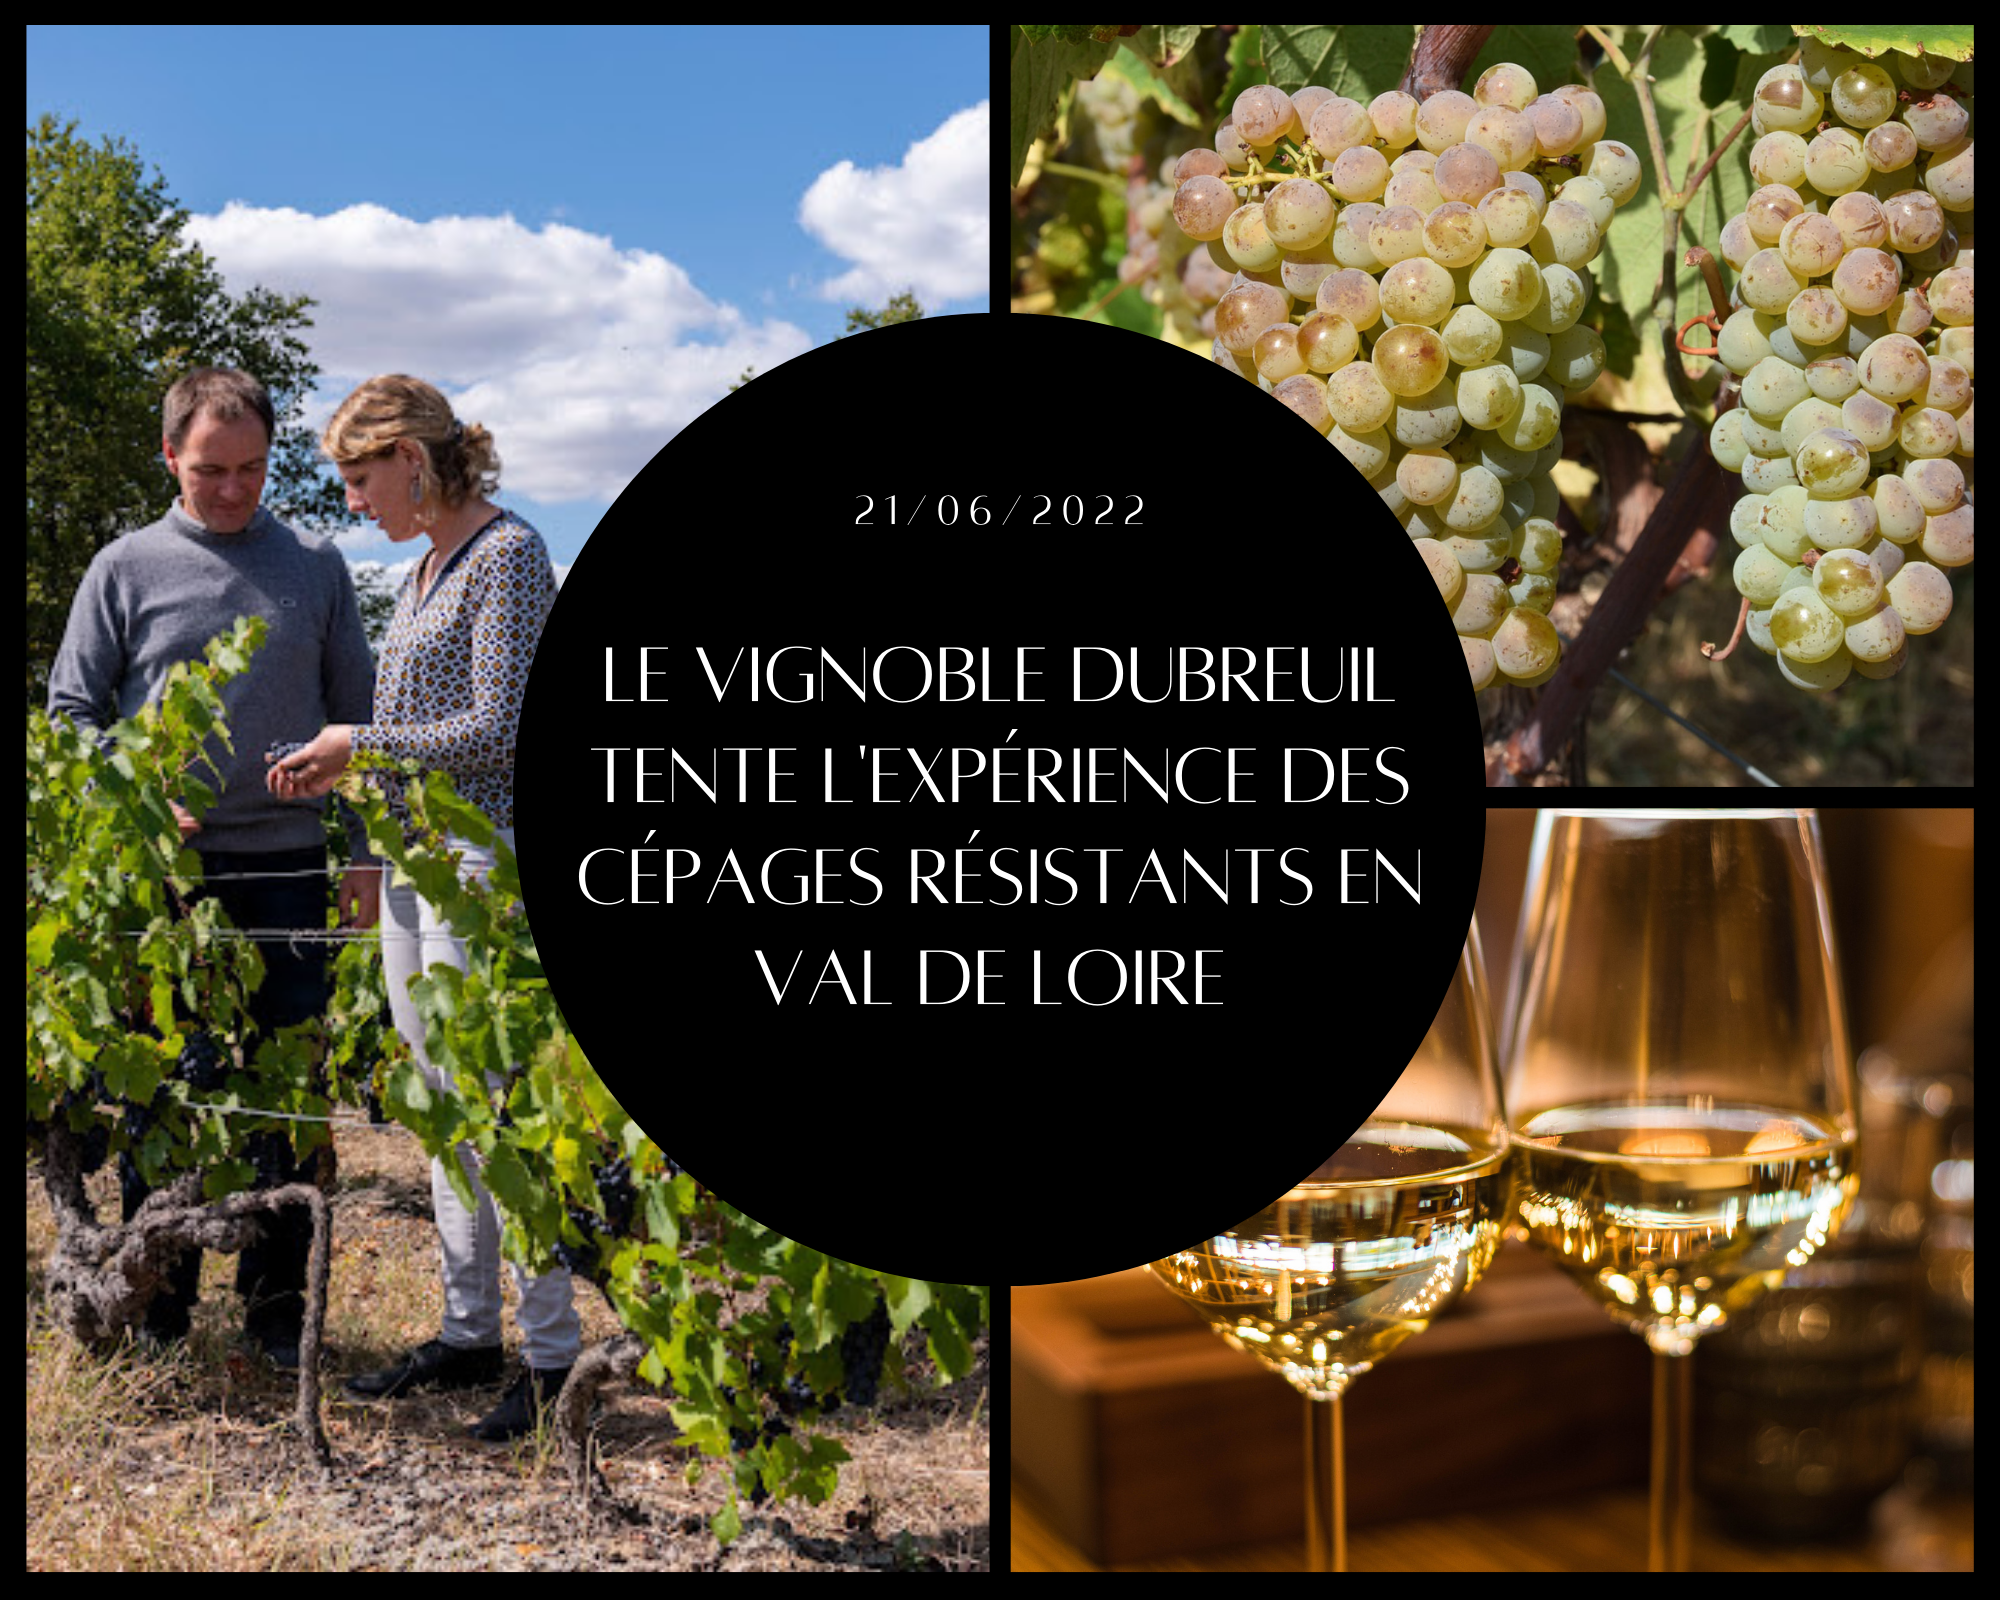 Laure et Stéphane Dubreuil font partie des premiers à avoir planté et vinifié l’un des cépages résistants autorisés par l’INRA. Après 3 ans d’attente, ils lancent la commercialisation de leurs premières cuvées de Floréal Blanc lors du salon Wine Paris.